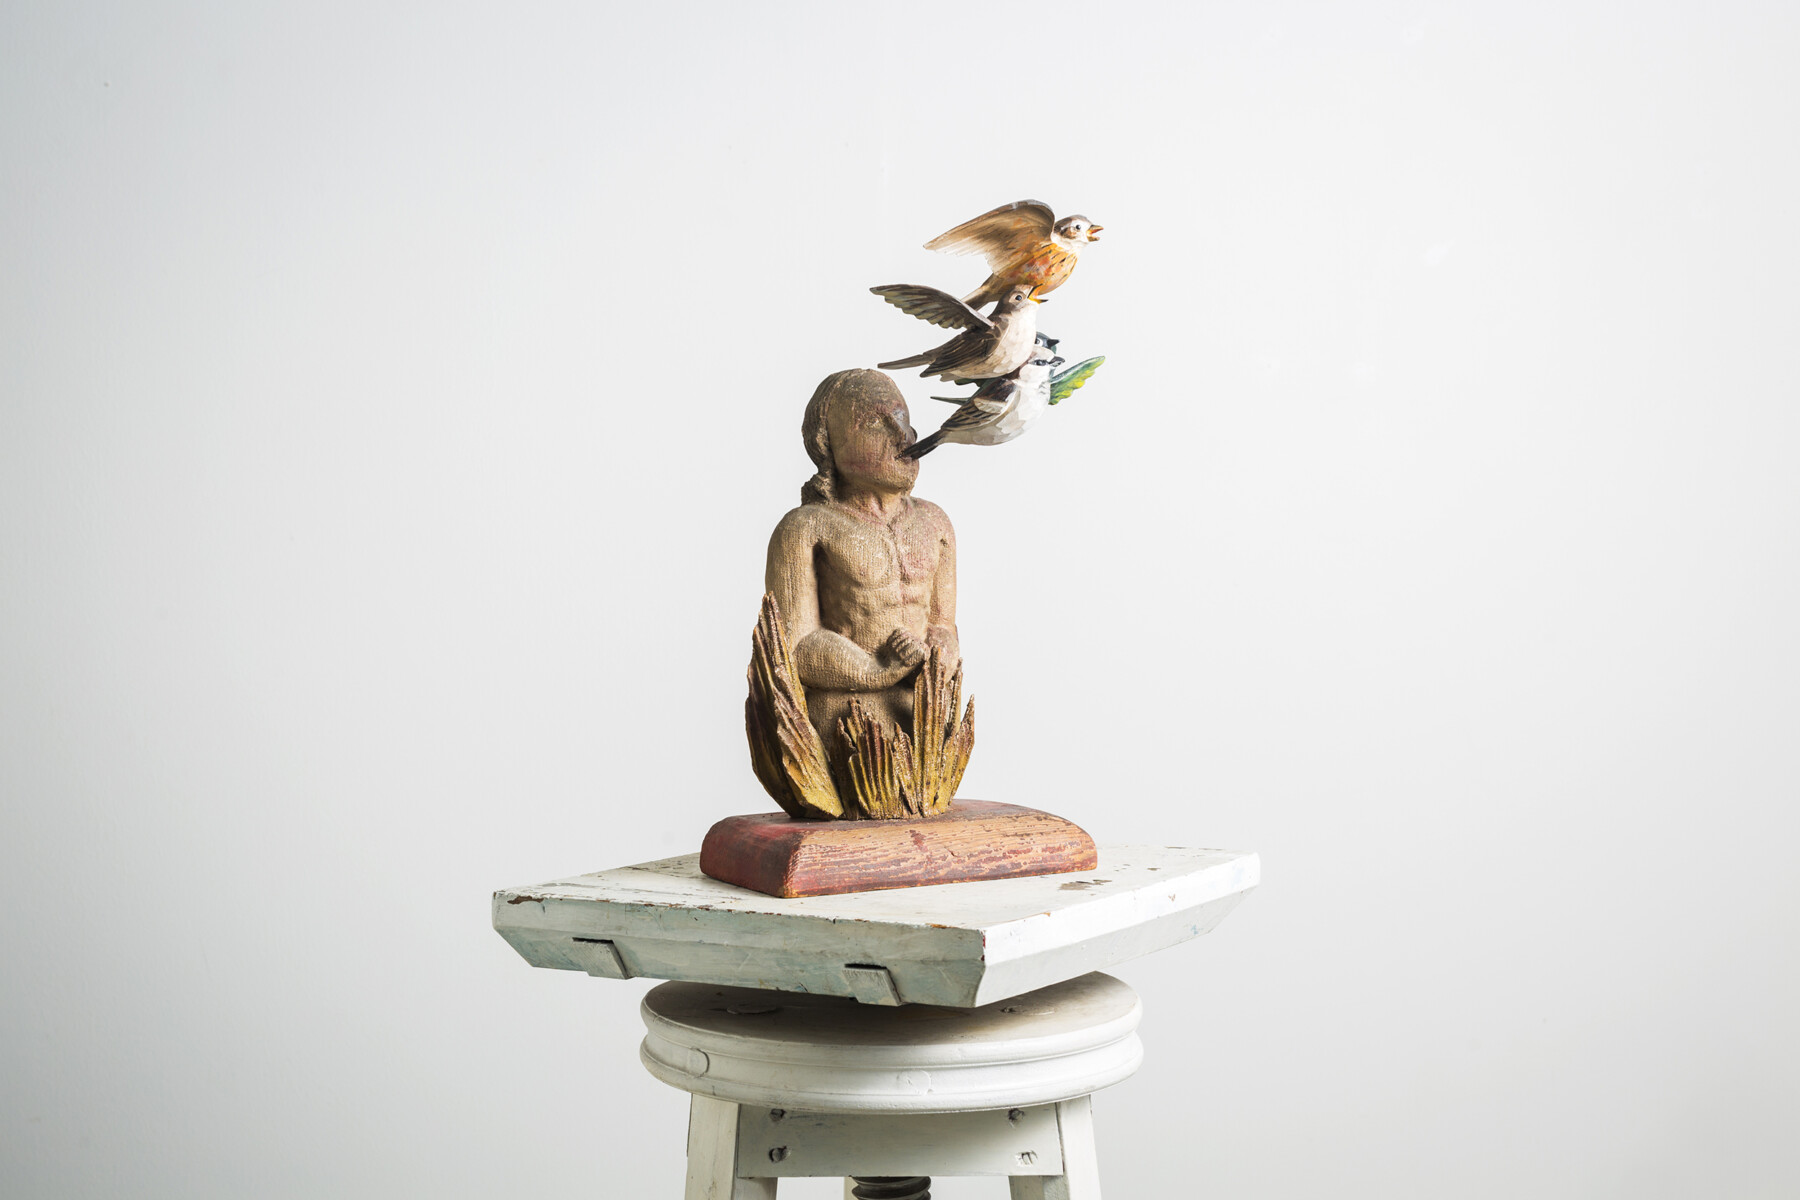 Um pedestal contém a escultura de uma pessoa com vários pássaros coloridos voando perto de sua cabeça ou possivelmente saindo de sua cabeça.